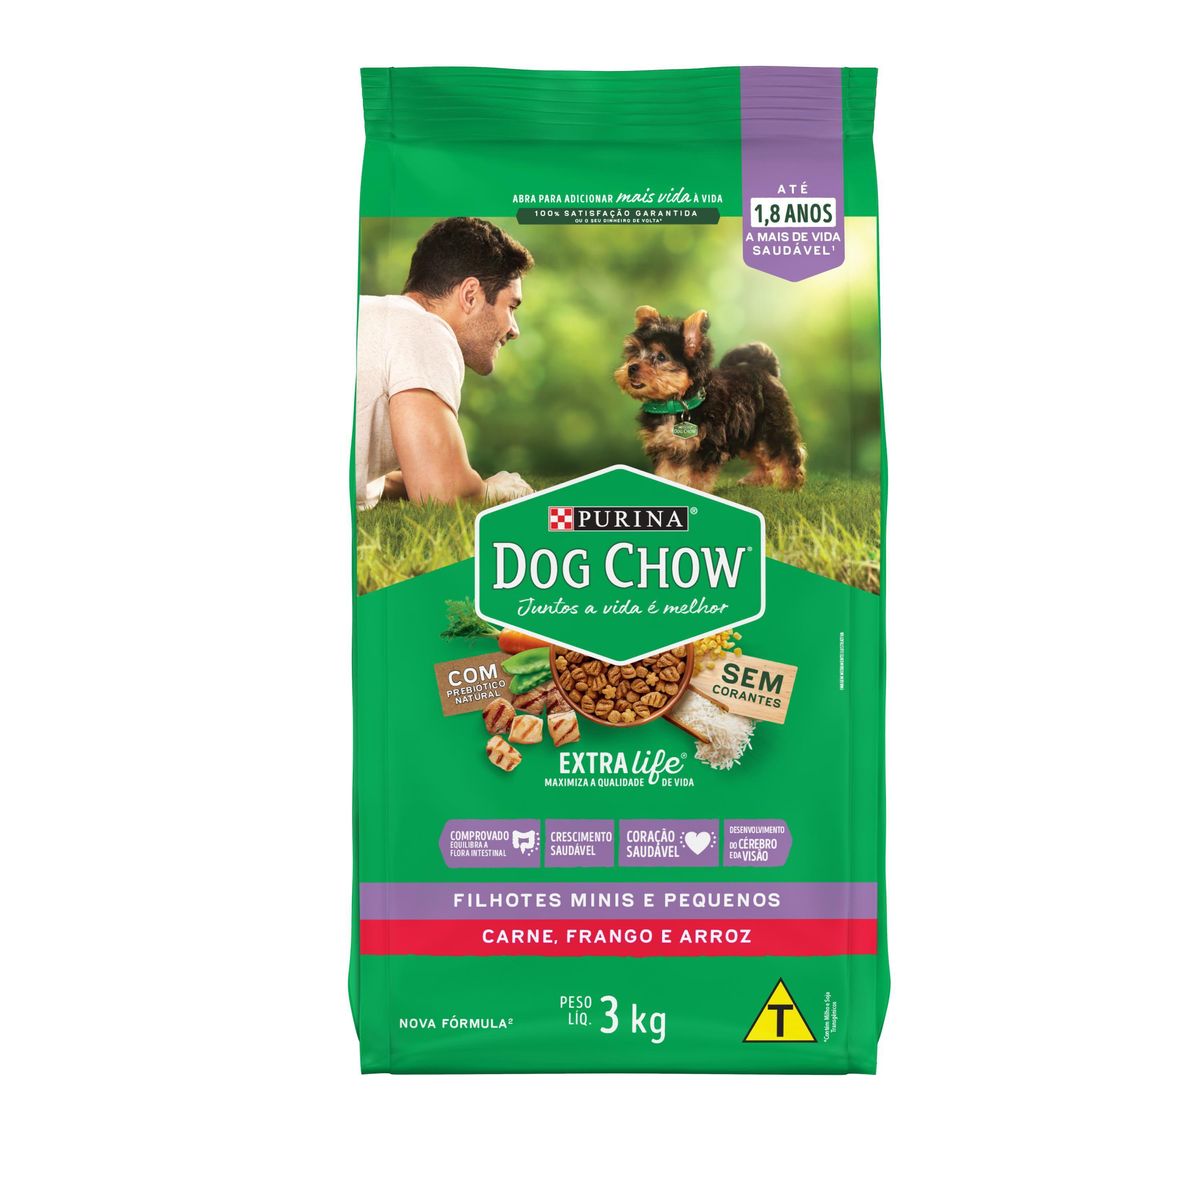 Alimento Dog Chow Cães Filhotes Minis e Pequenos Carne, Frango e Arroz 3kg